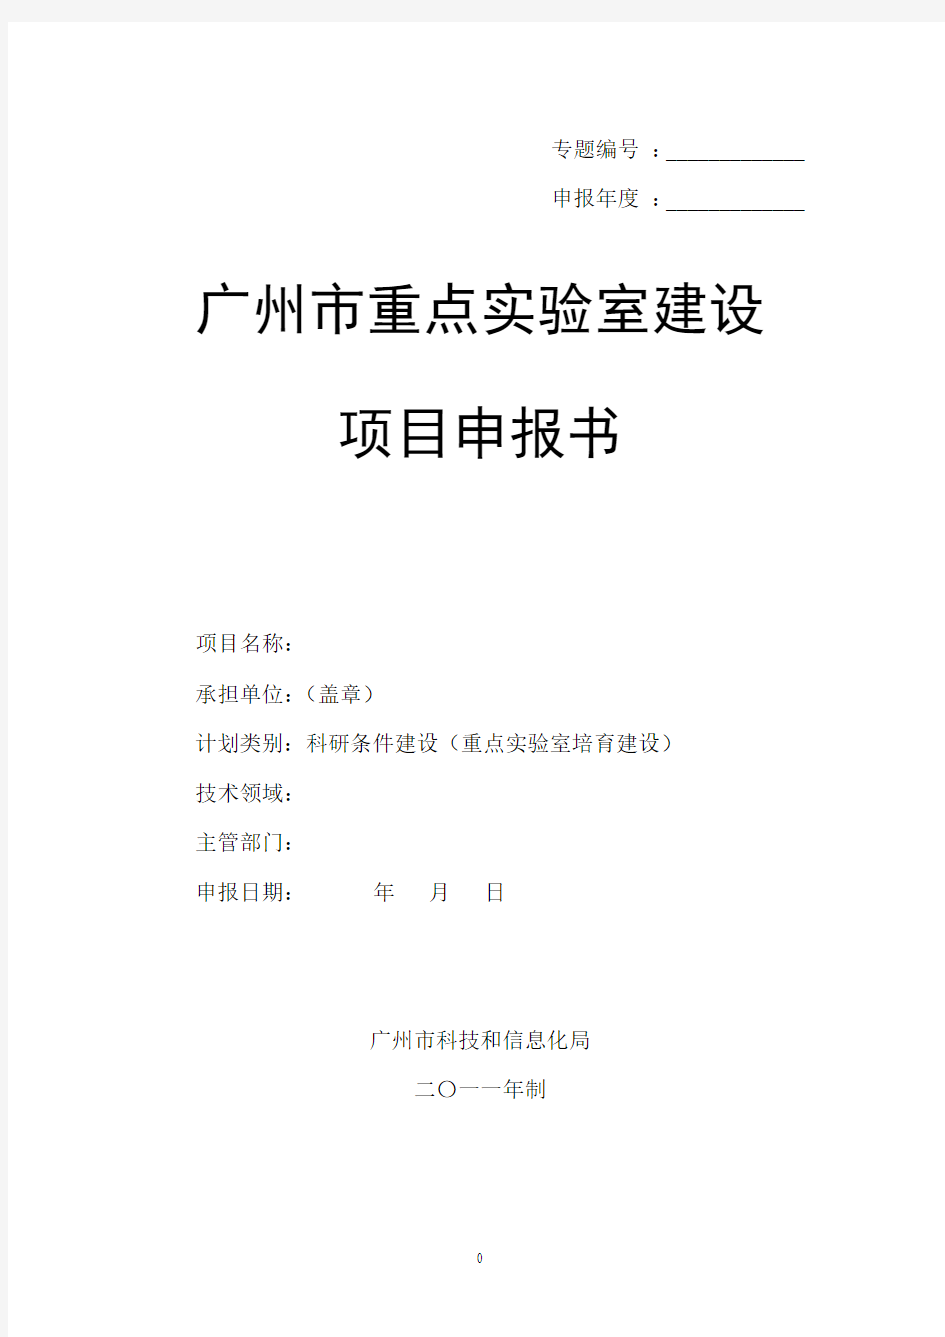 1、广州市重点实验室建设项目申报书